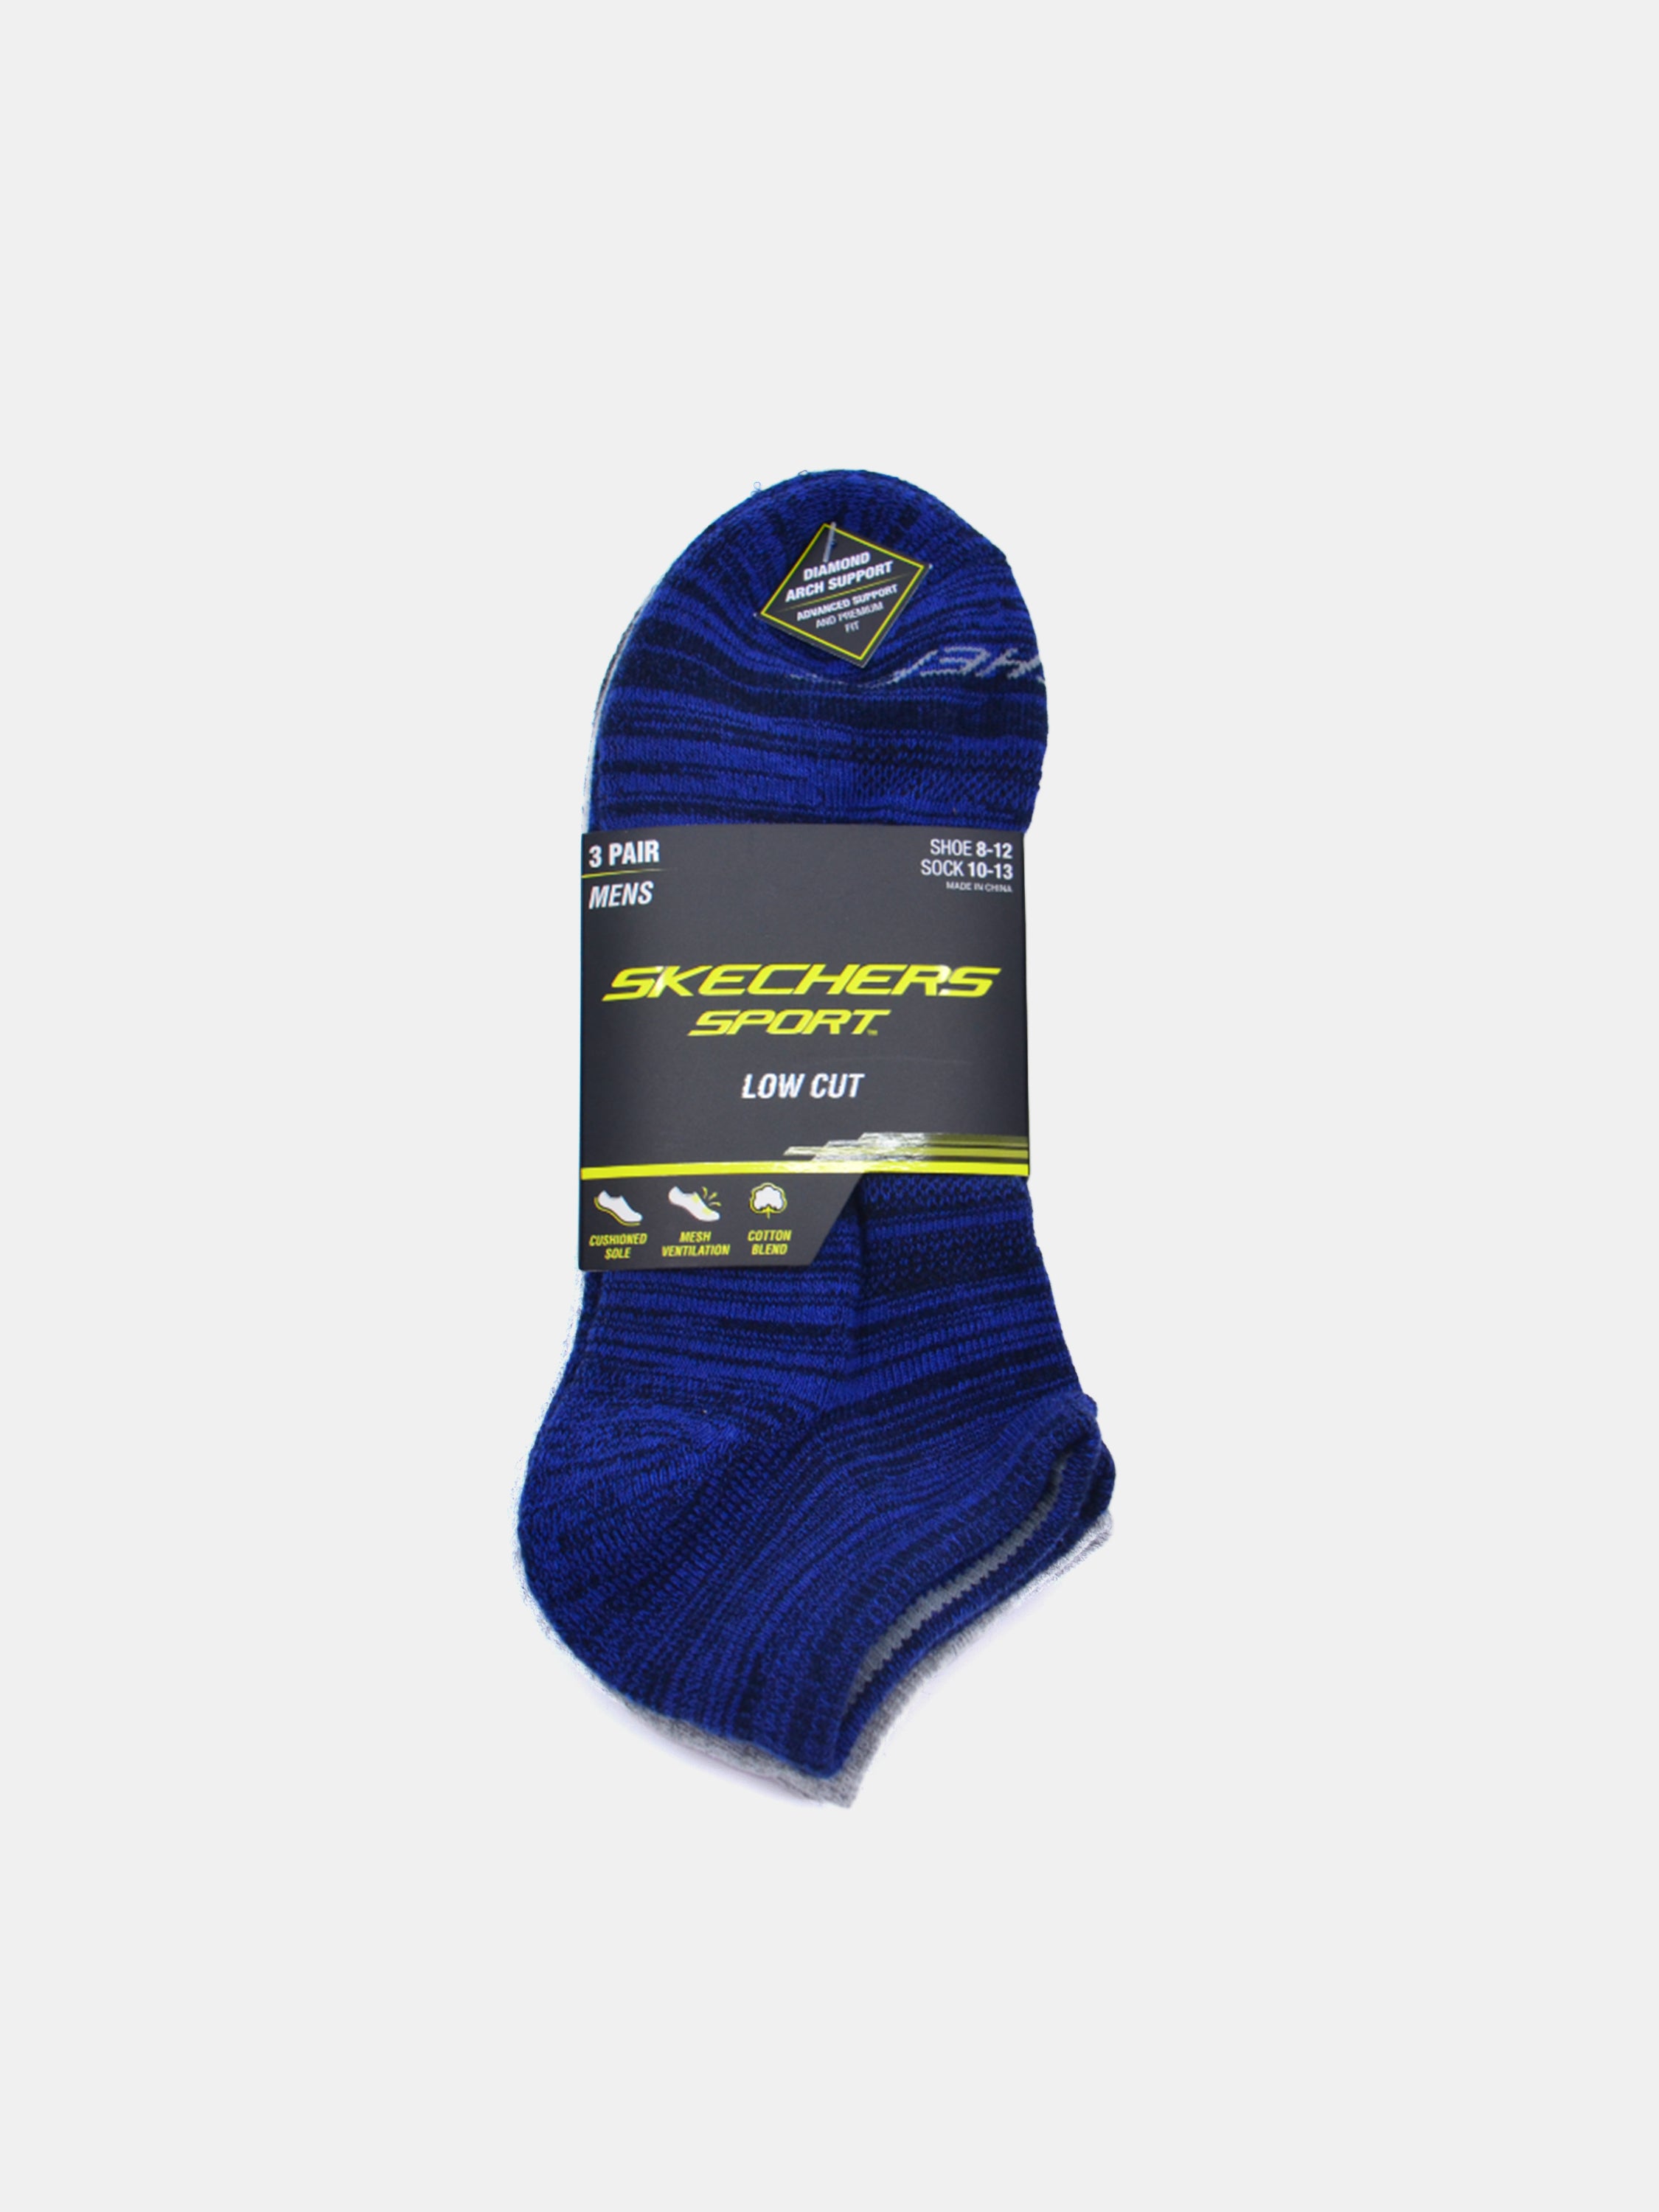 Skechers Men\'s Low Cut Sport Socks (3 Pack)